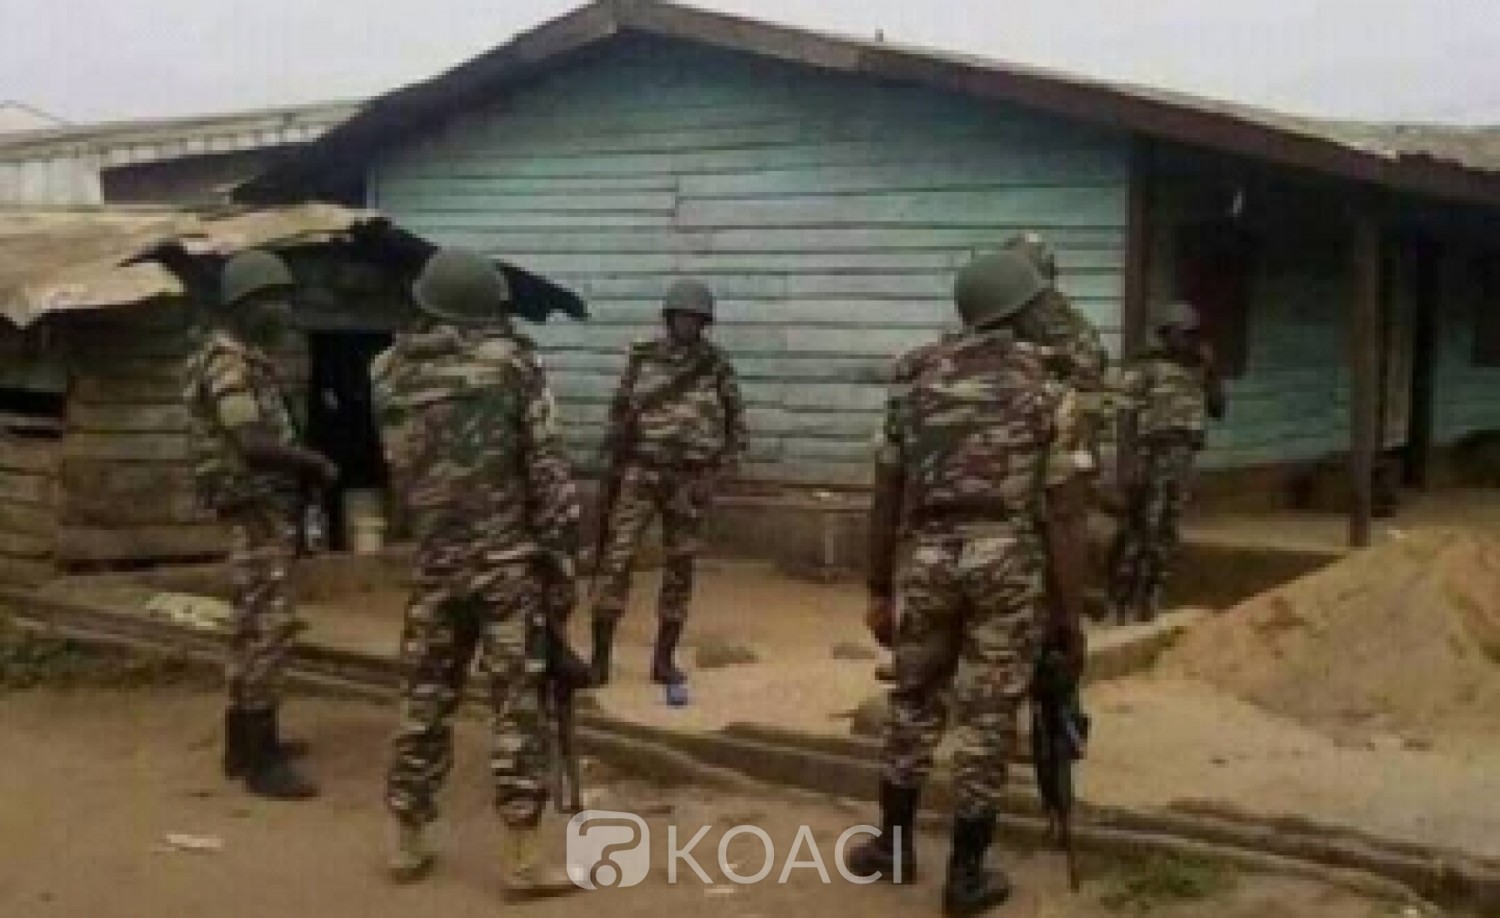 Cameroun : Crise anglophone, l'armée lance des recherches pour retrouver les 10 personnes enlevées dans le sud-ouest